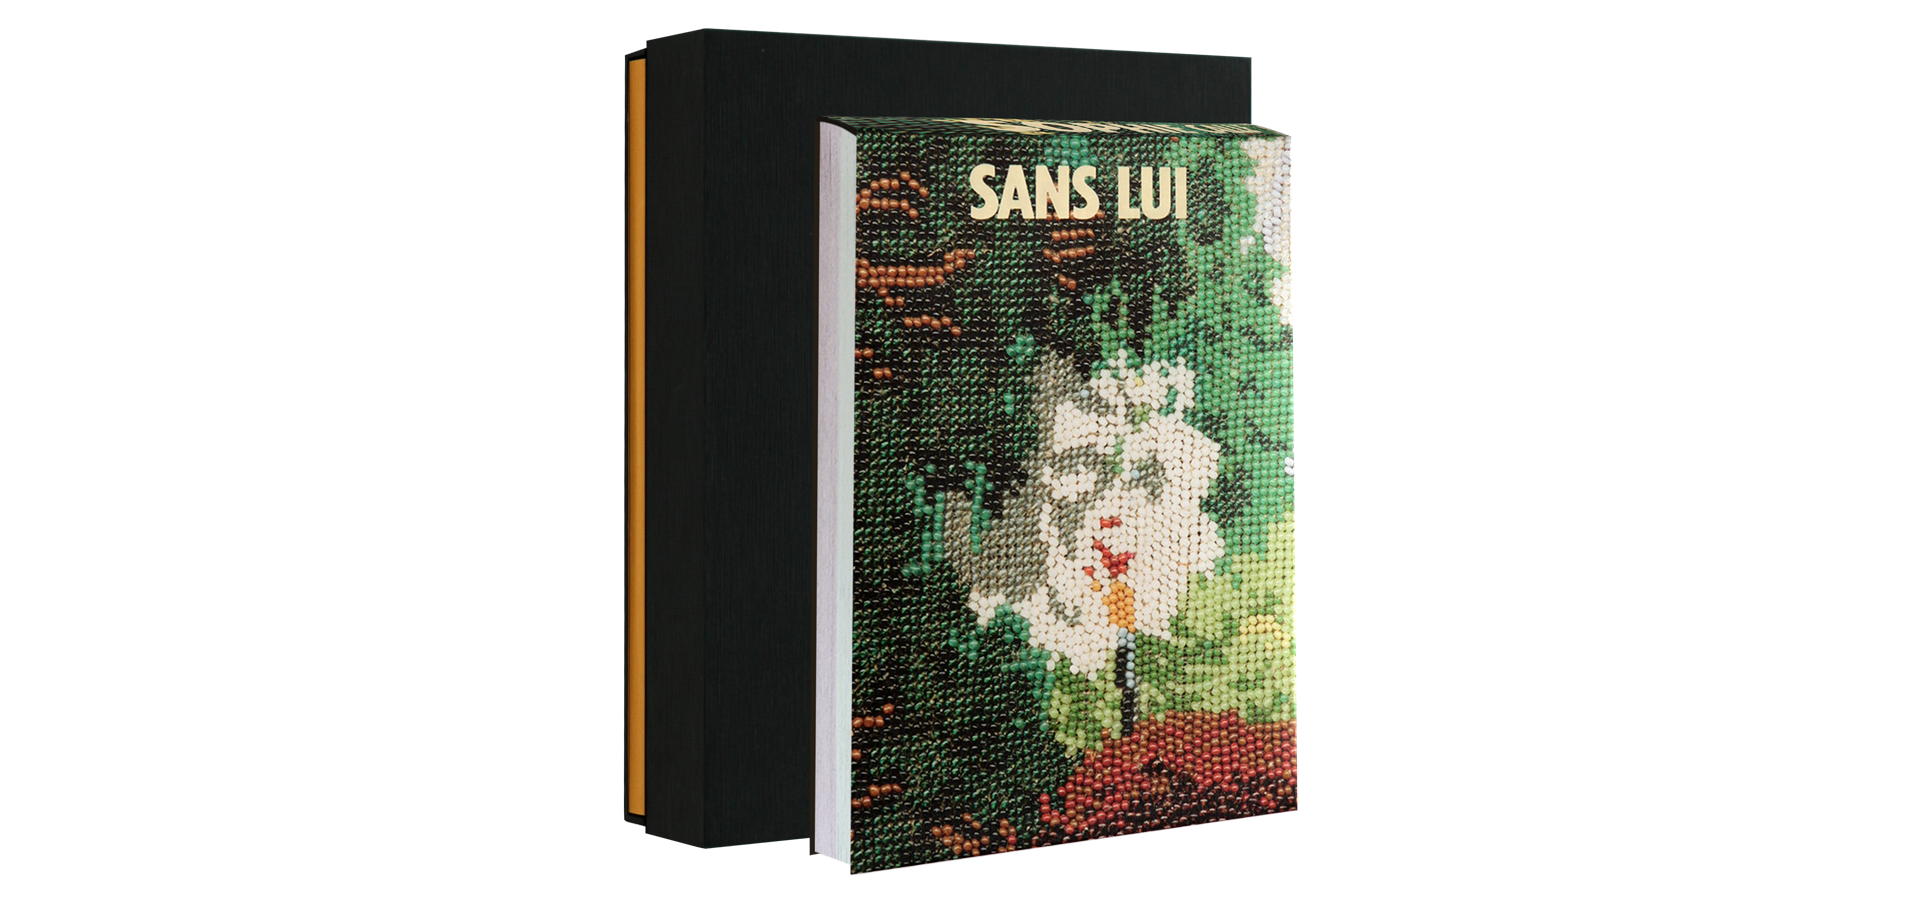 SANS LUI - Limited edition